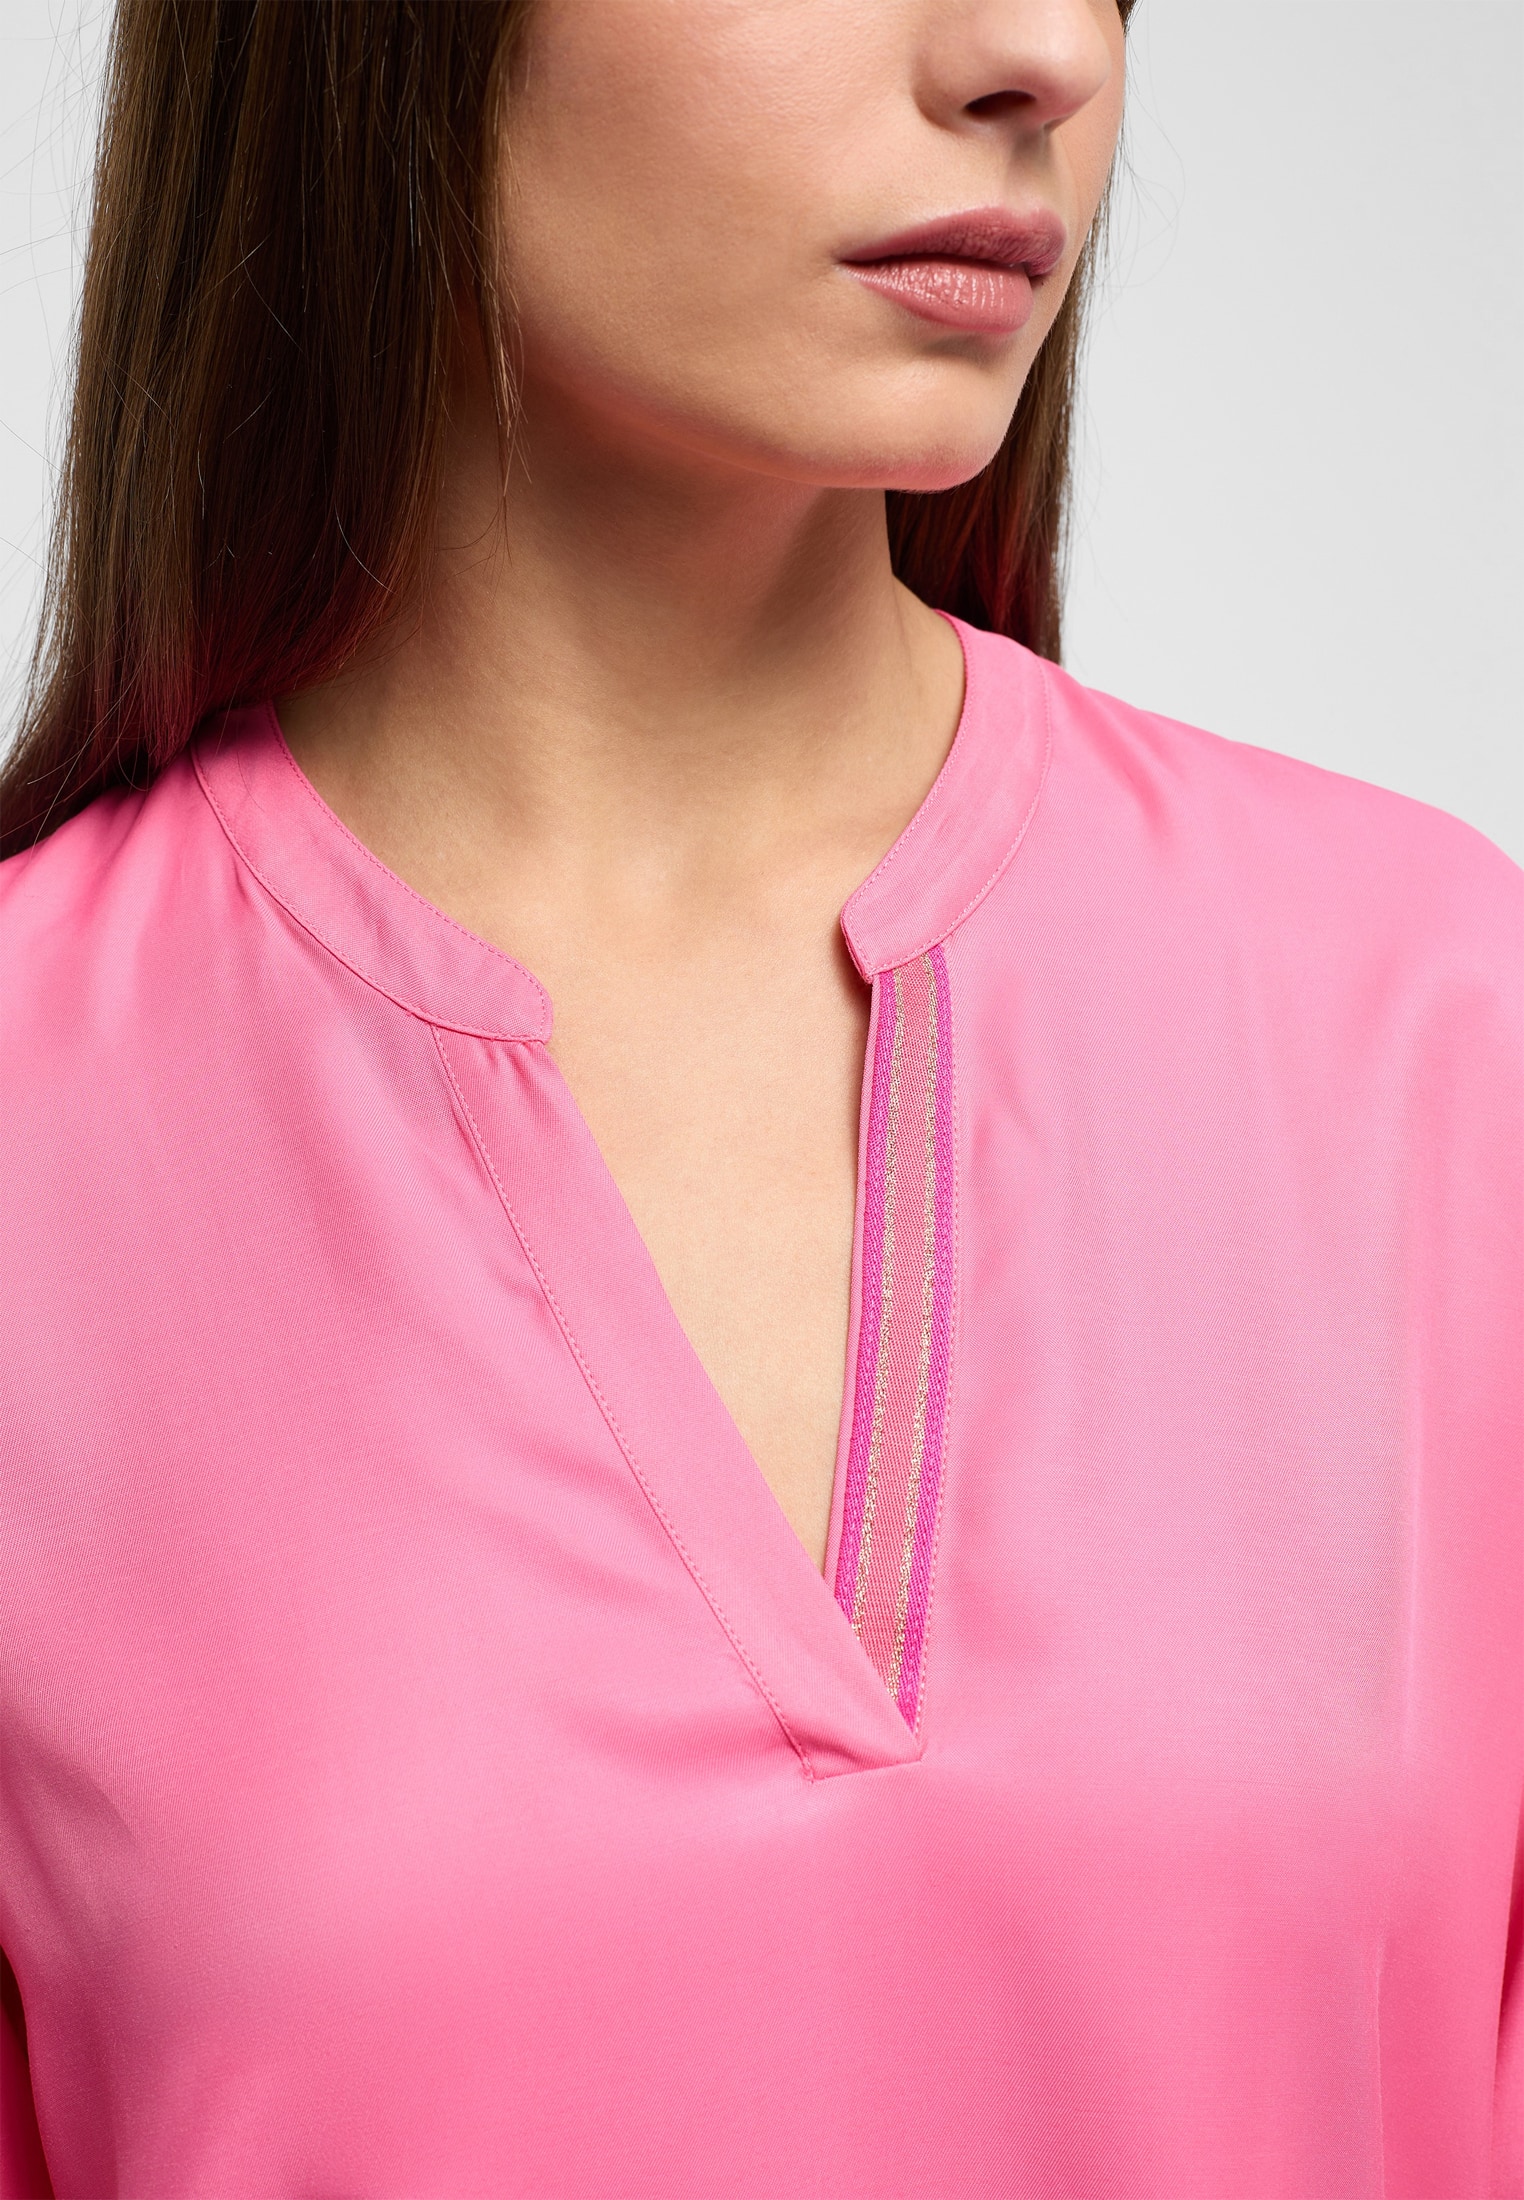 Shirt | pink Langarm | Bluse in | pink 2BL04272-15-21-42-1/1 | unifarben 42 Viscose